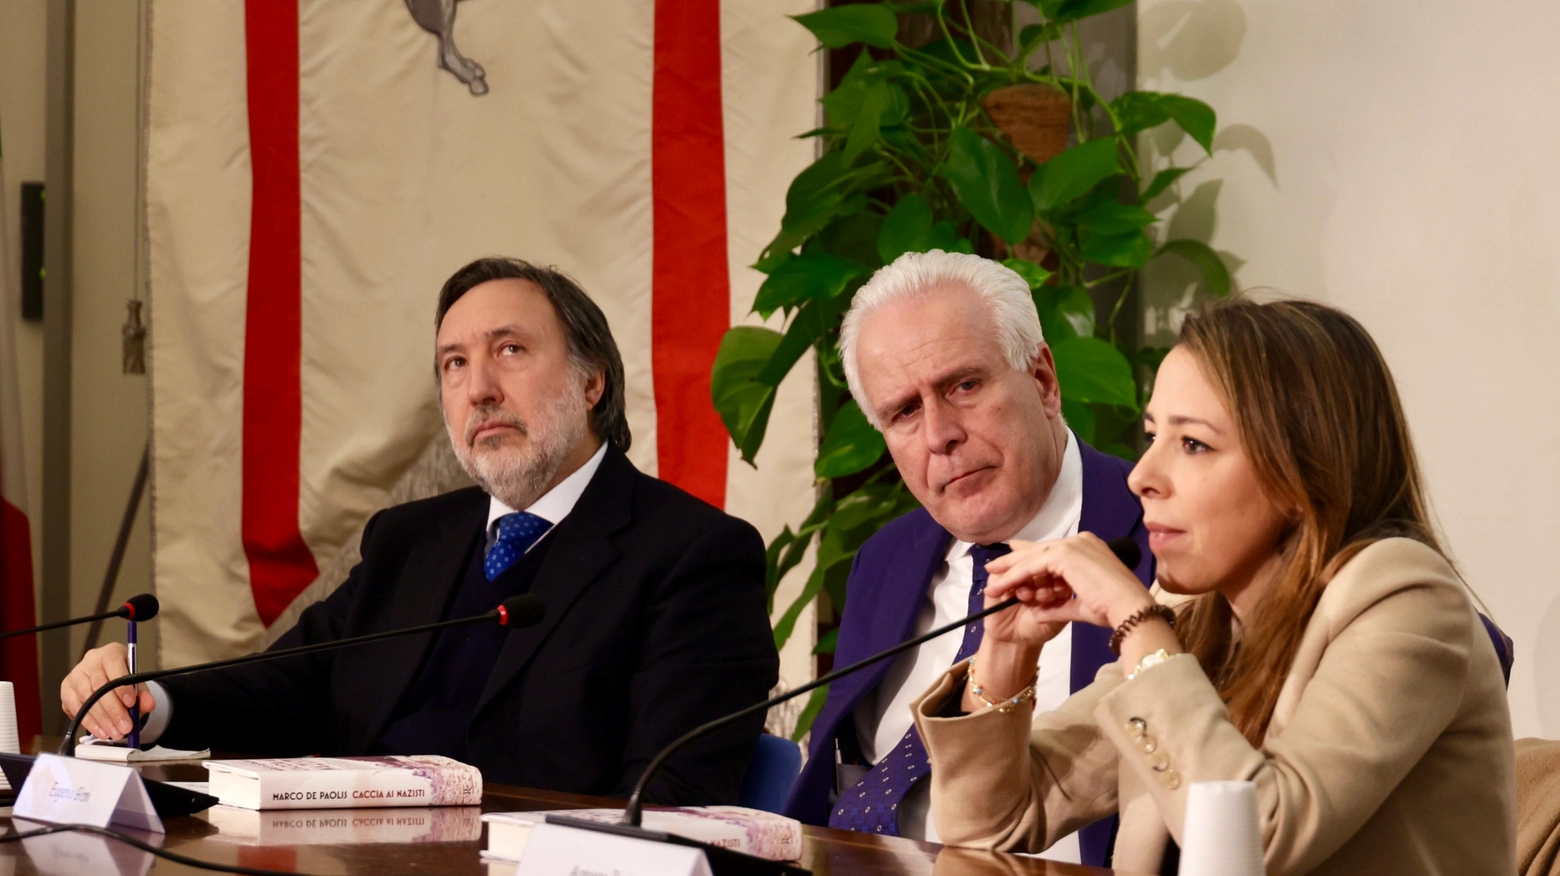 Da sinistra Marco de Paolis, Eugenio Giani e Agnese Pini (foto Gianluca Moggi/New Press Photo)